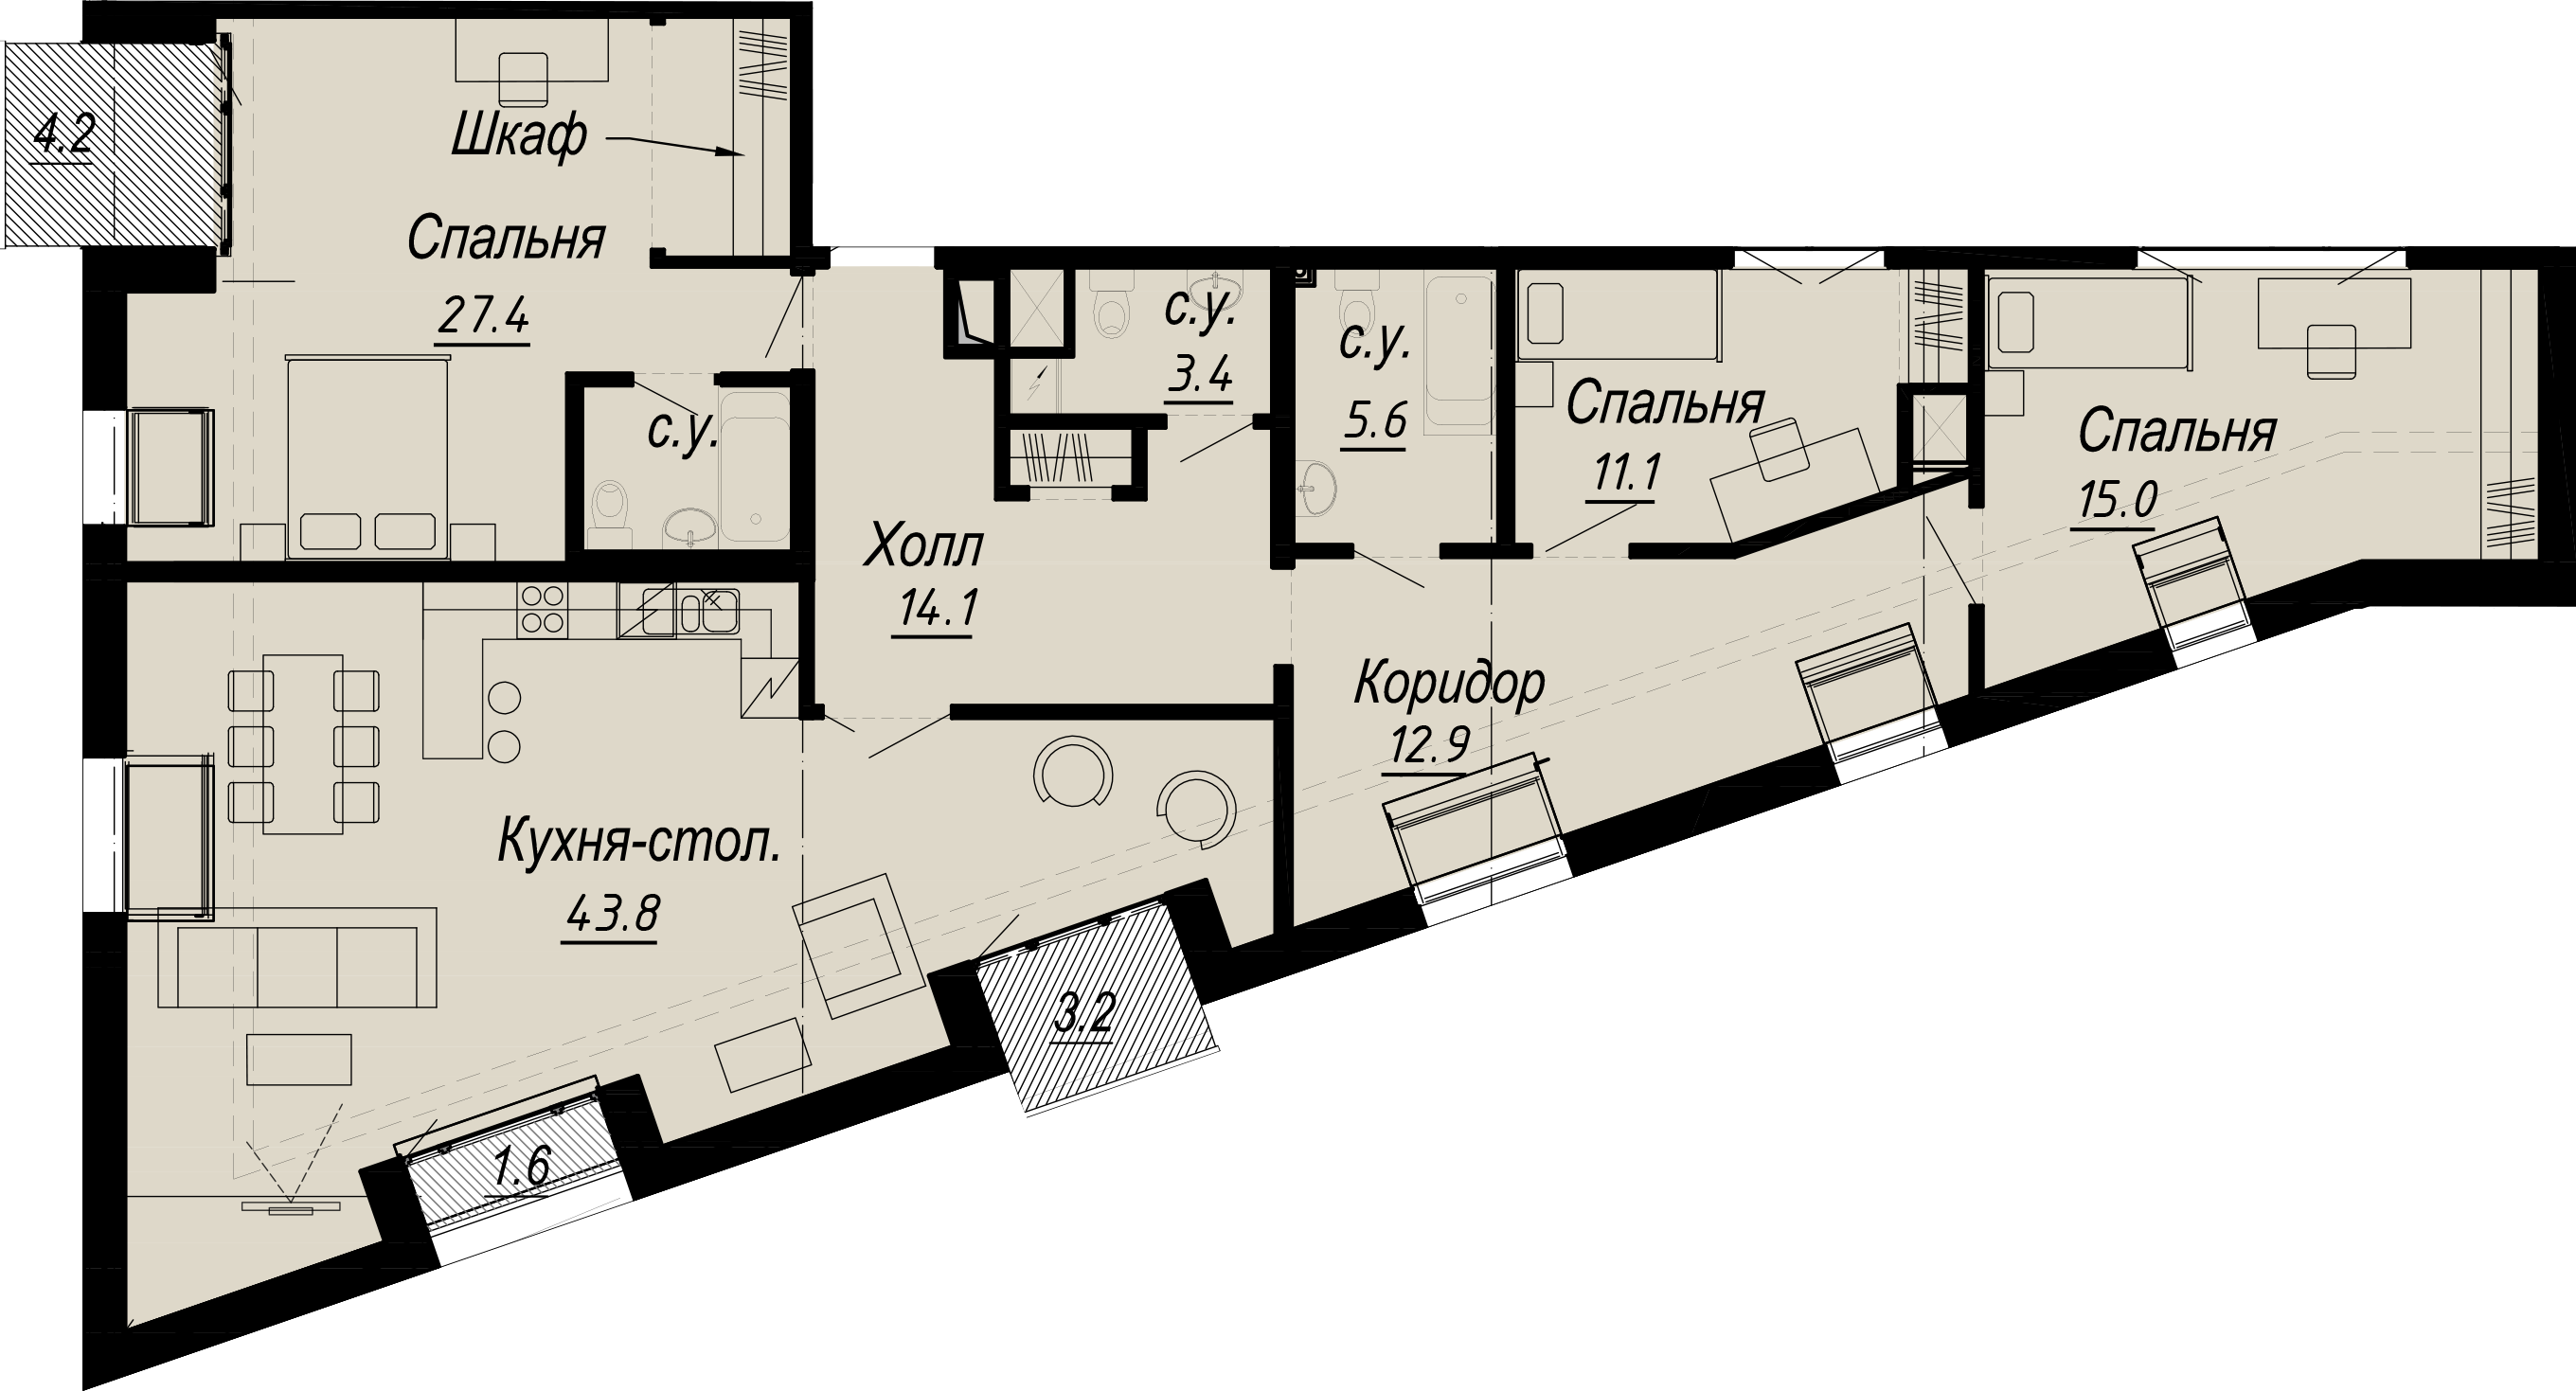 3-комнатная квартира  №28-7 в Meltzer Hall: 142.15 м², этаж 7 - купить в Санкт-Петербурге